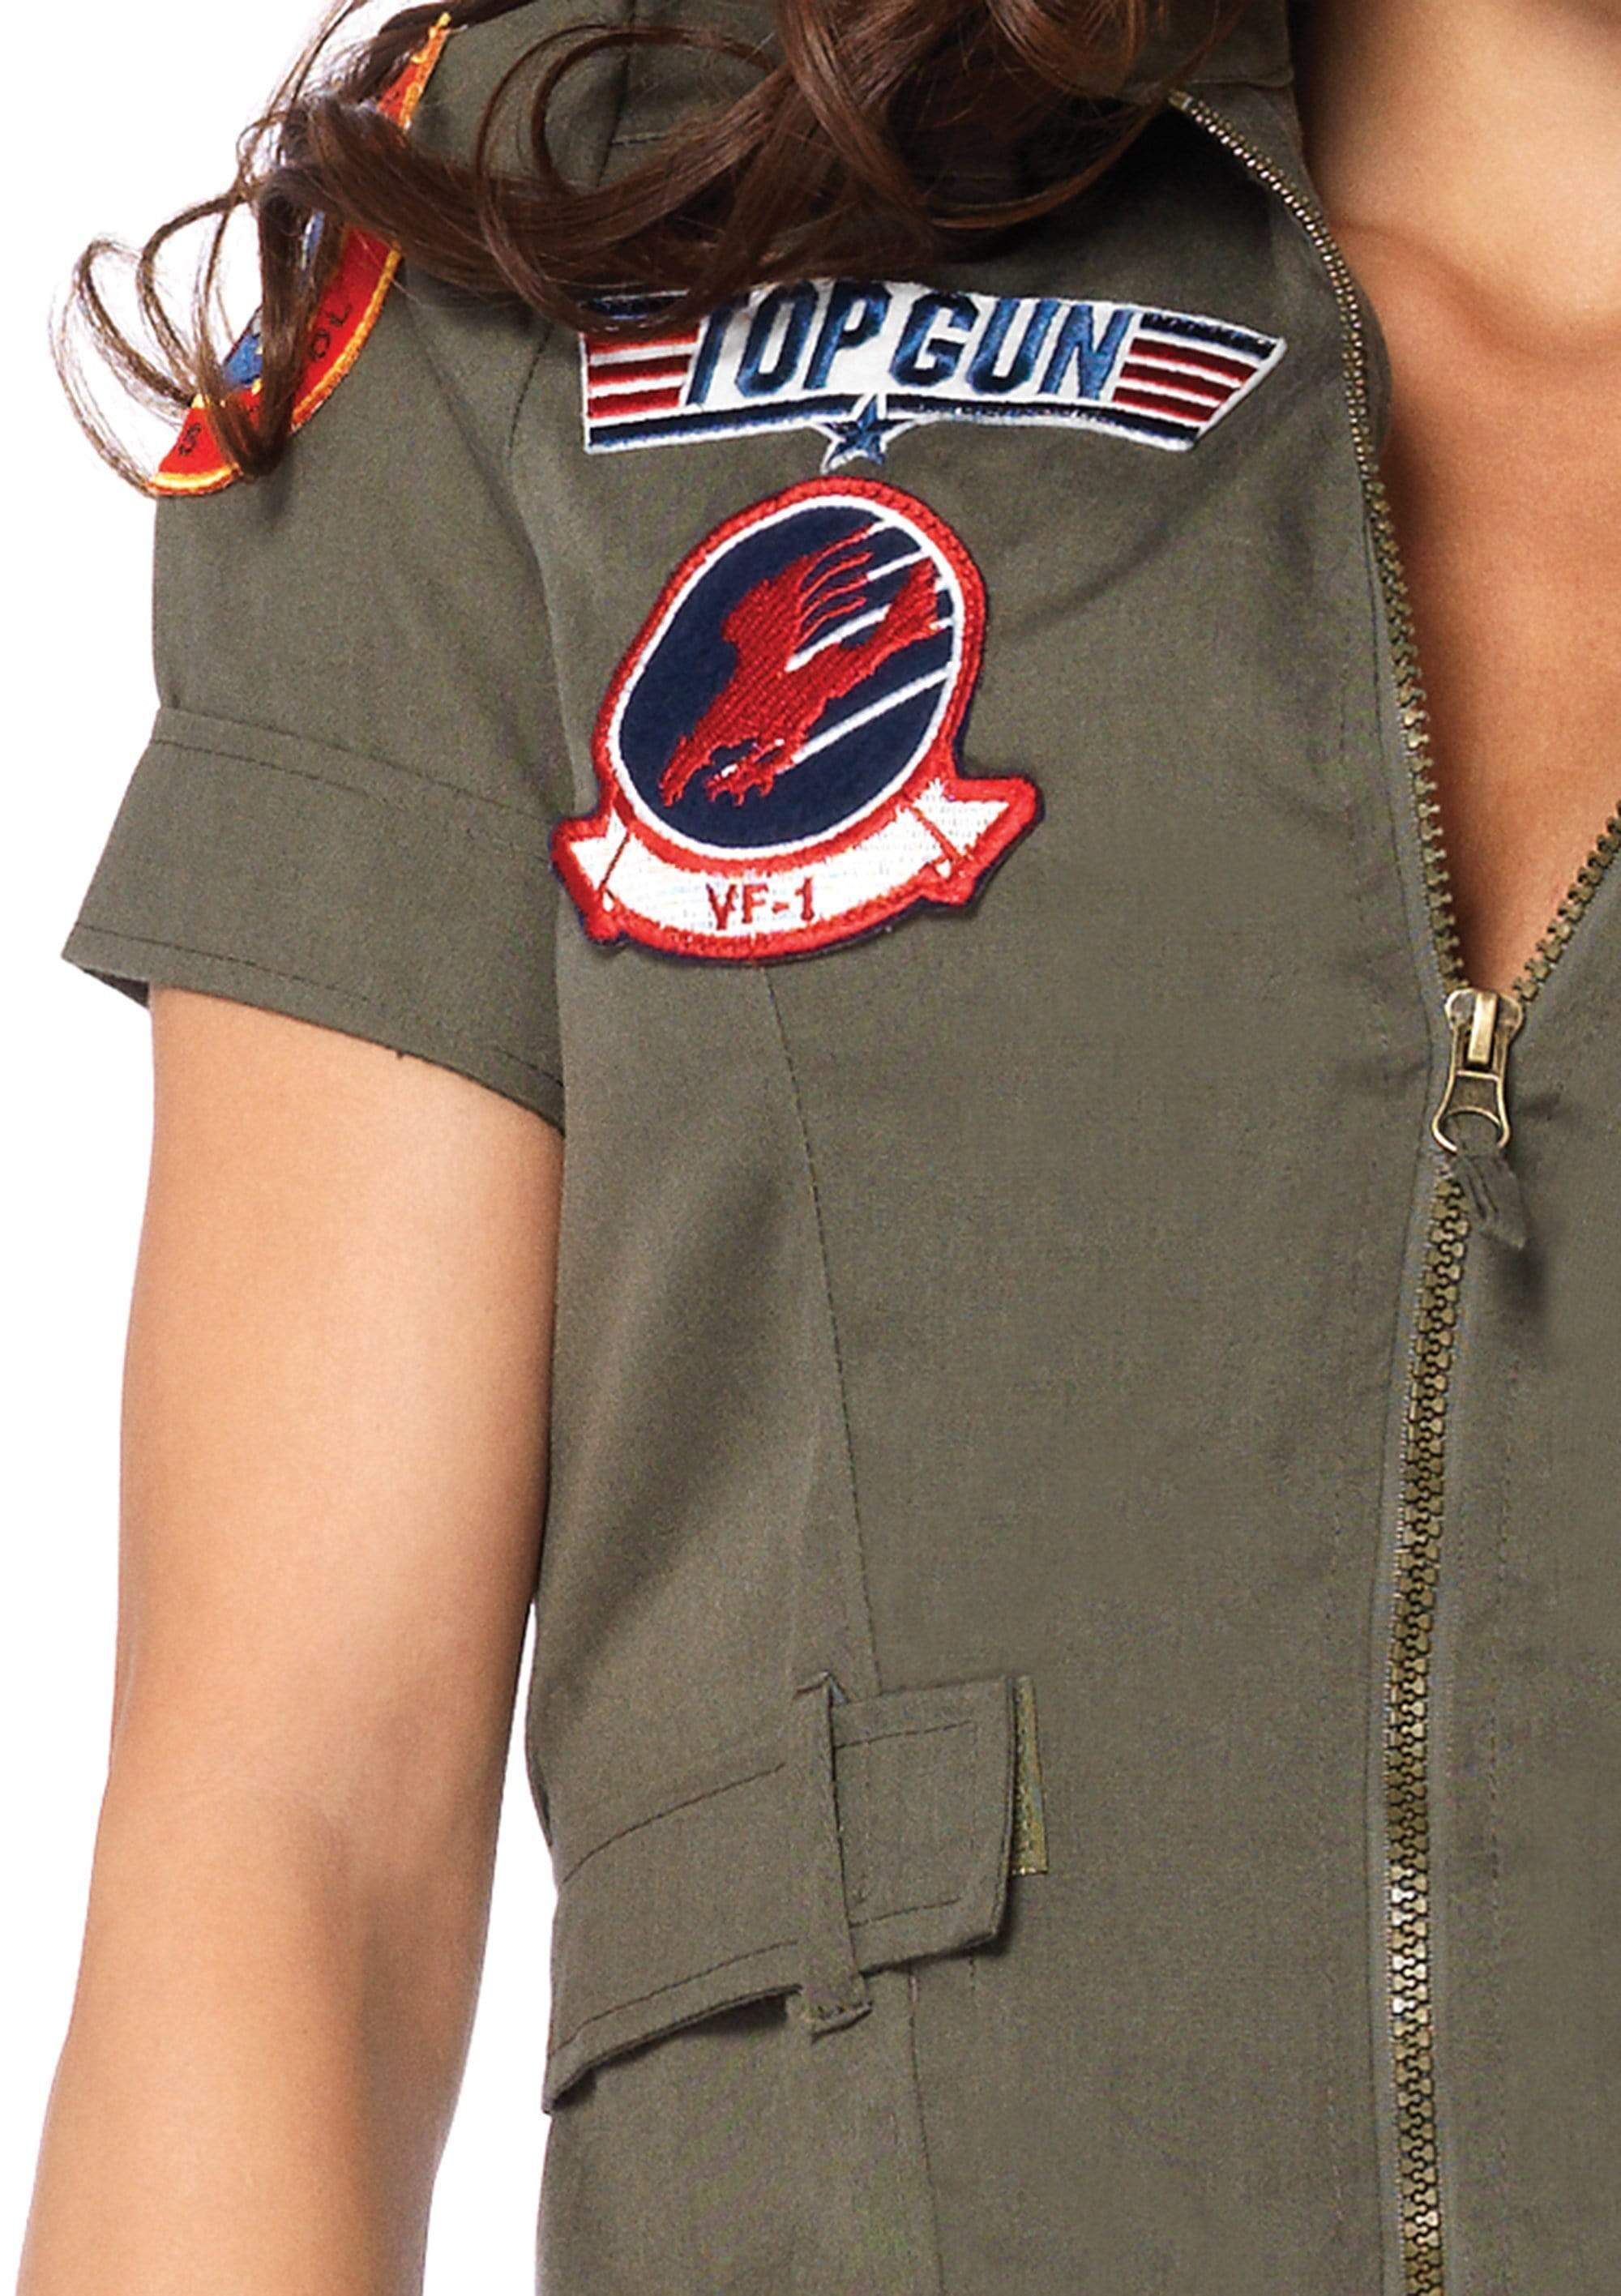 Top Gun Womens Flight Dress Costume, Womens Top Gun Costume –